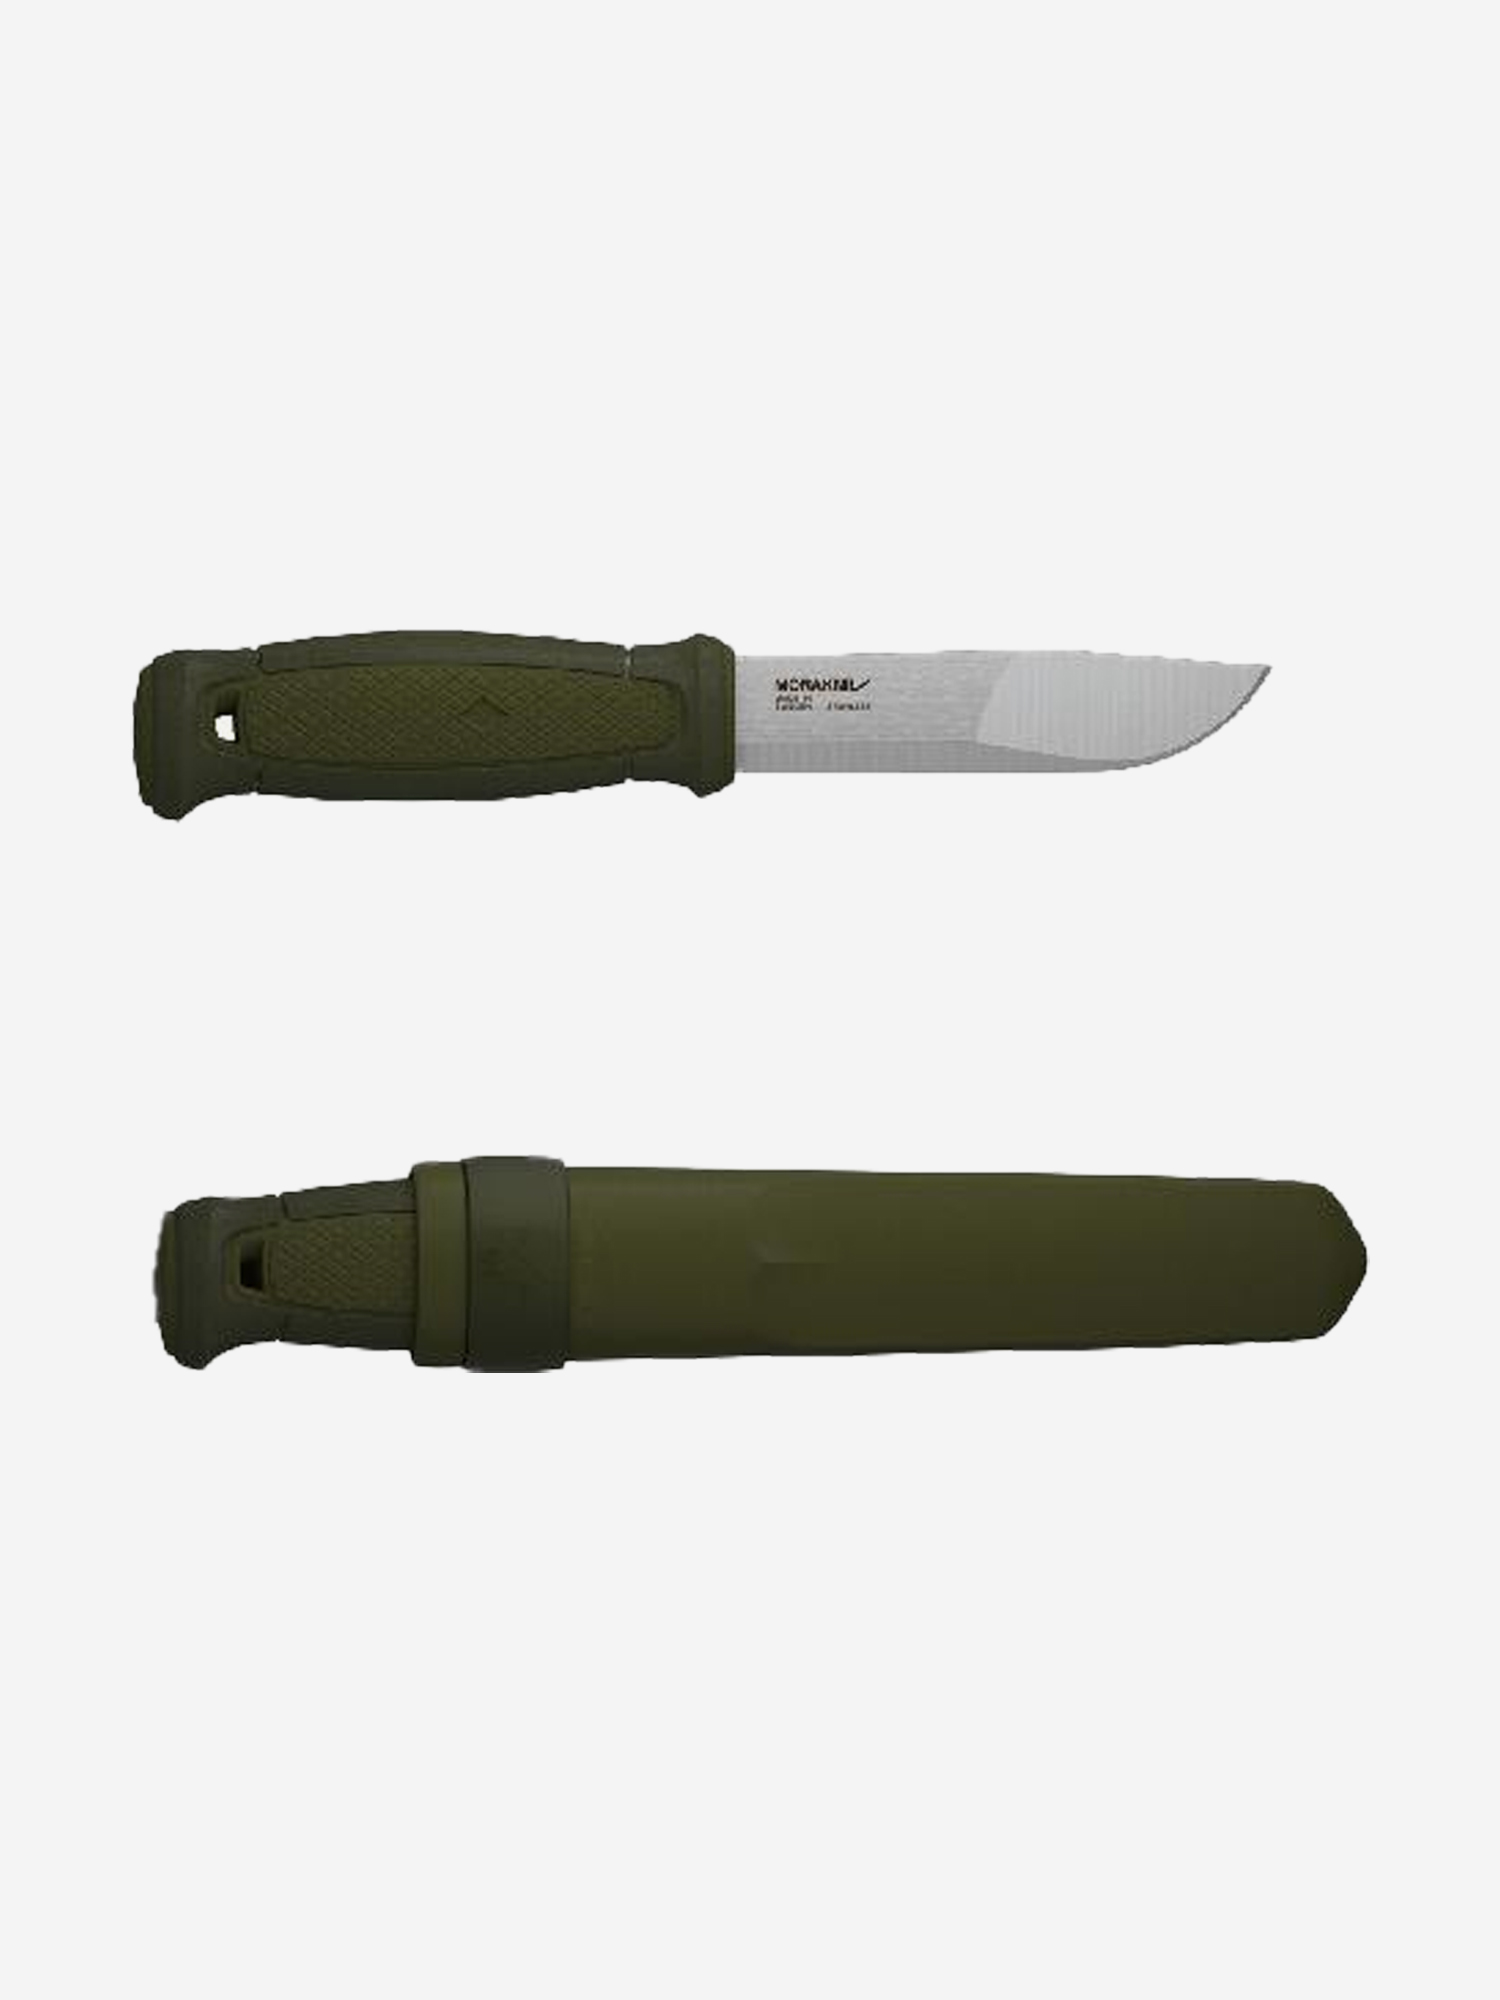 Нож Morakniv Kansbol, нержавеющая сталь, прорезиненная ручка, цвет зеленый+ножны, 12634, Зеленый венчик нержавеющая сталь навеска зеленый daniks стандарт yw kt093b 3g d 014